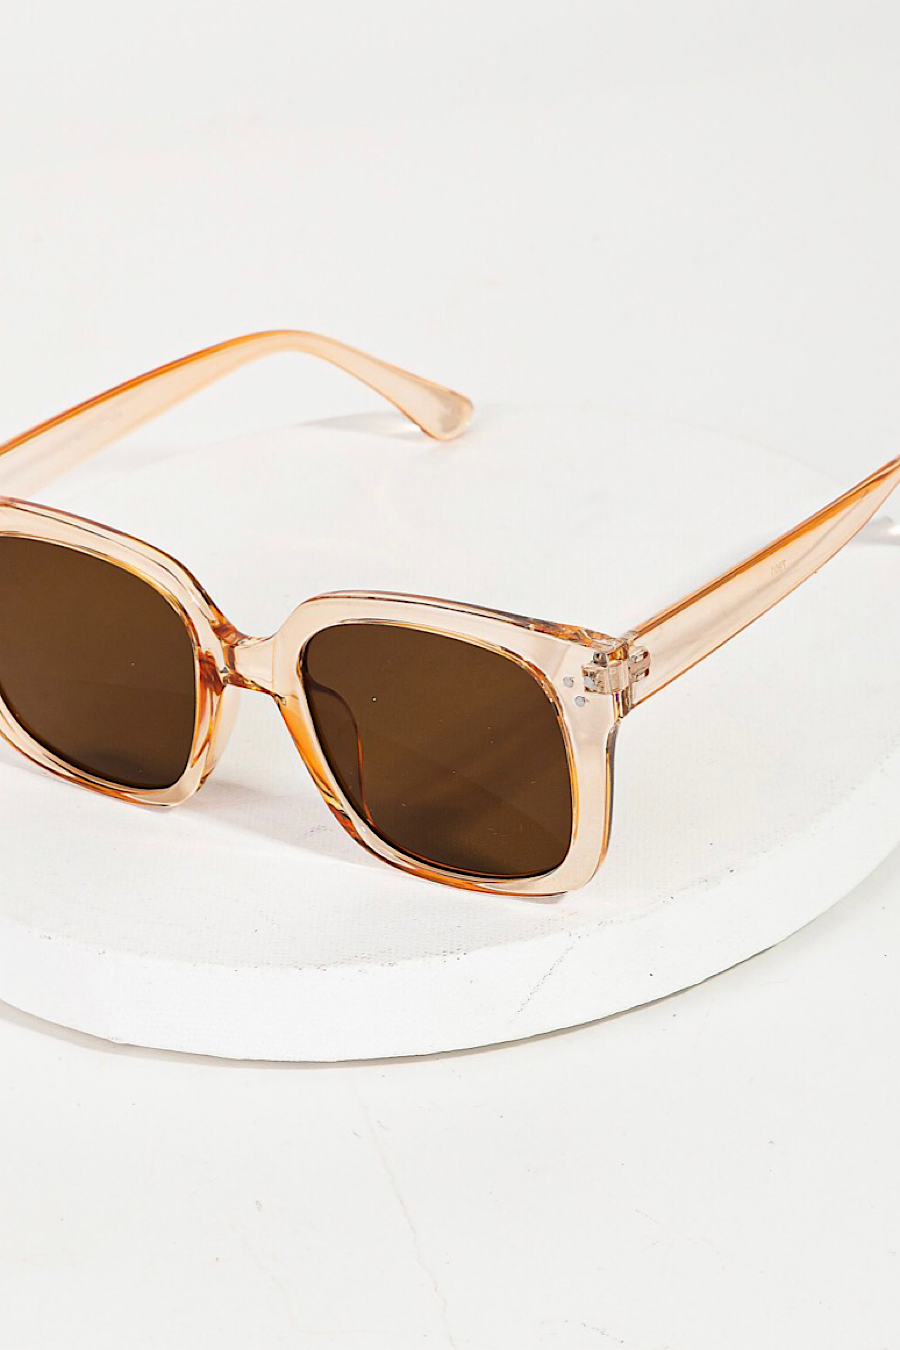 Acetate Wayfarer Sunglasses in Several Colors!